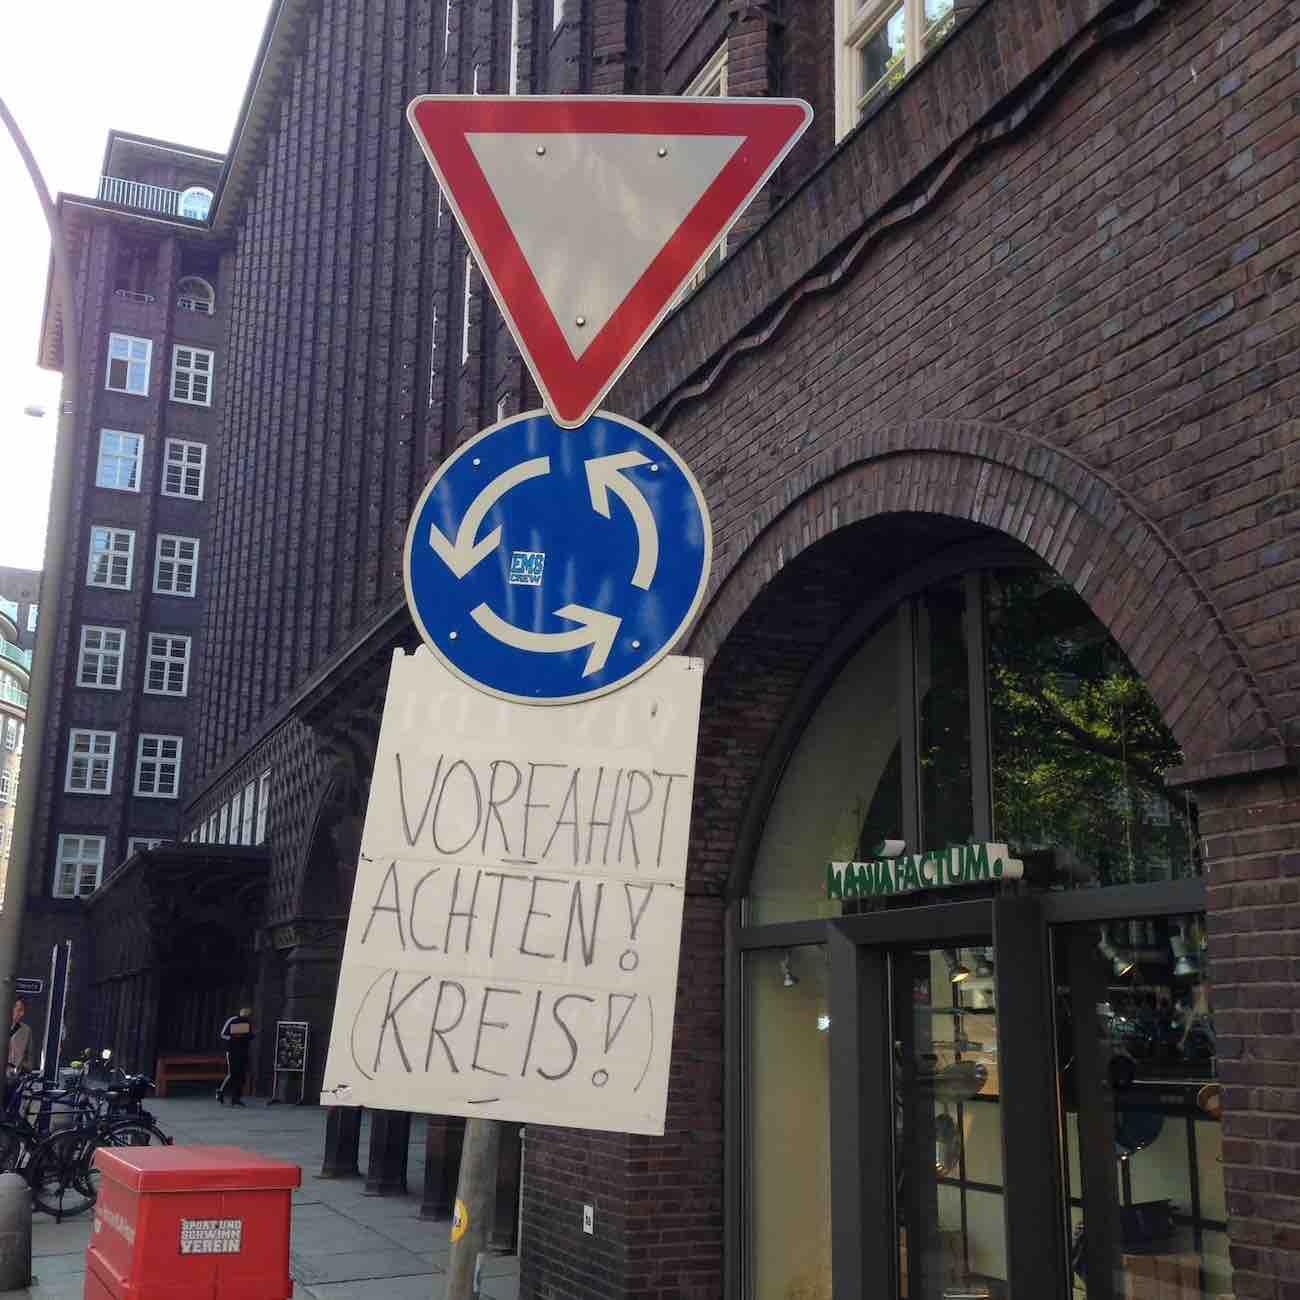 Verkehrsregeln nacherklärt, wahrscheinlich nicht nur für Manufactum-Kunden, gesehen am Burchardplatz